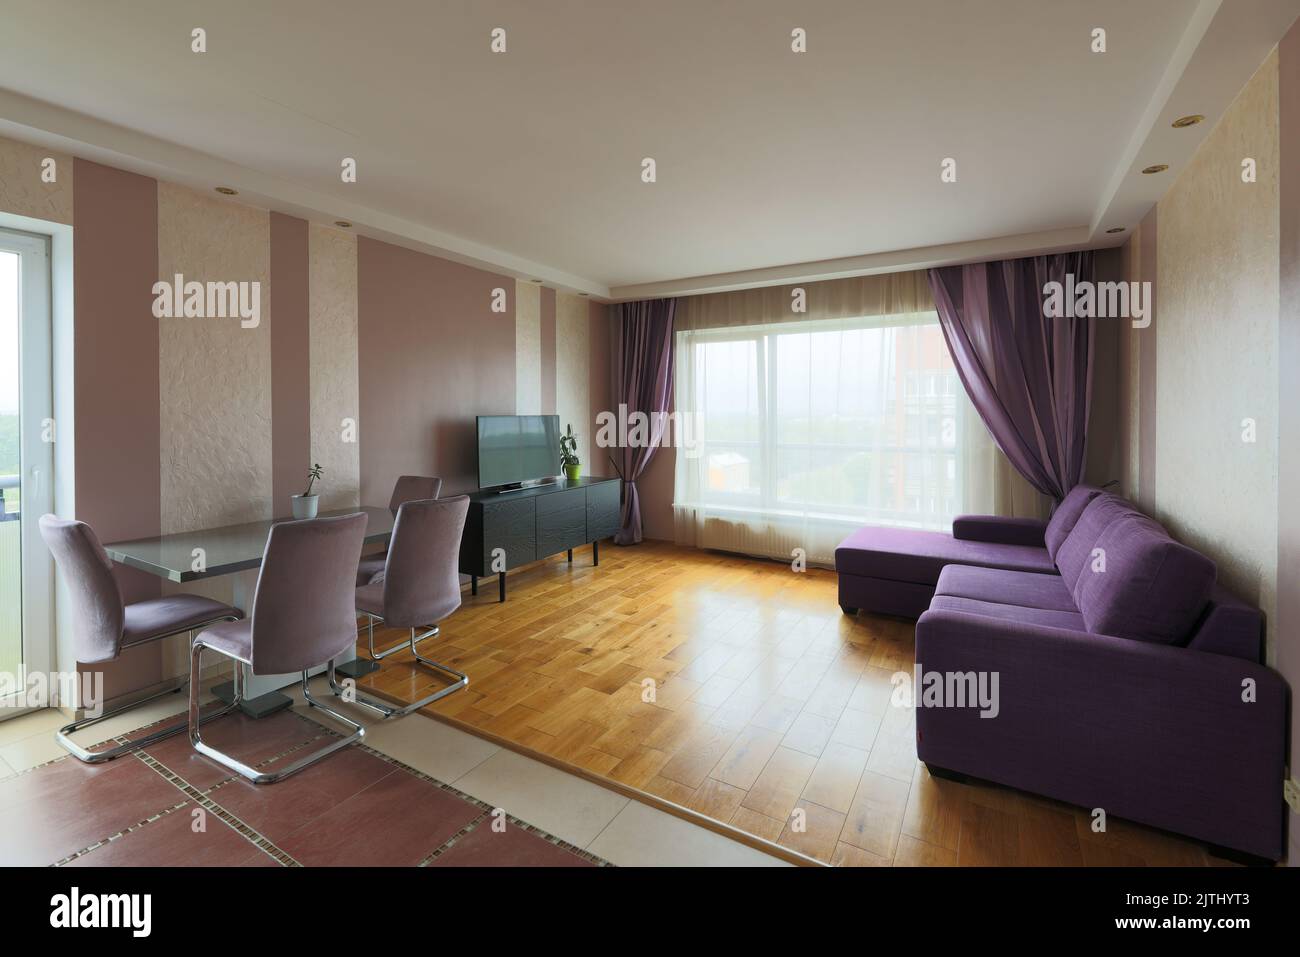 Innenansicht eines purpurfarbenen Design-Wohnzimmers Stockfoto